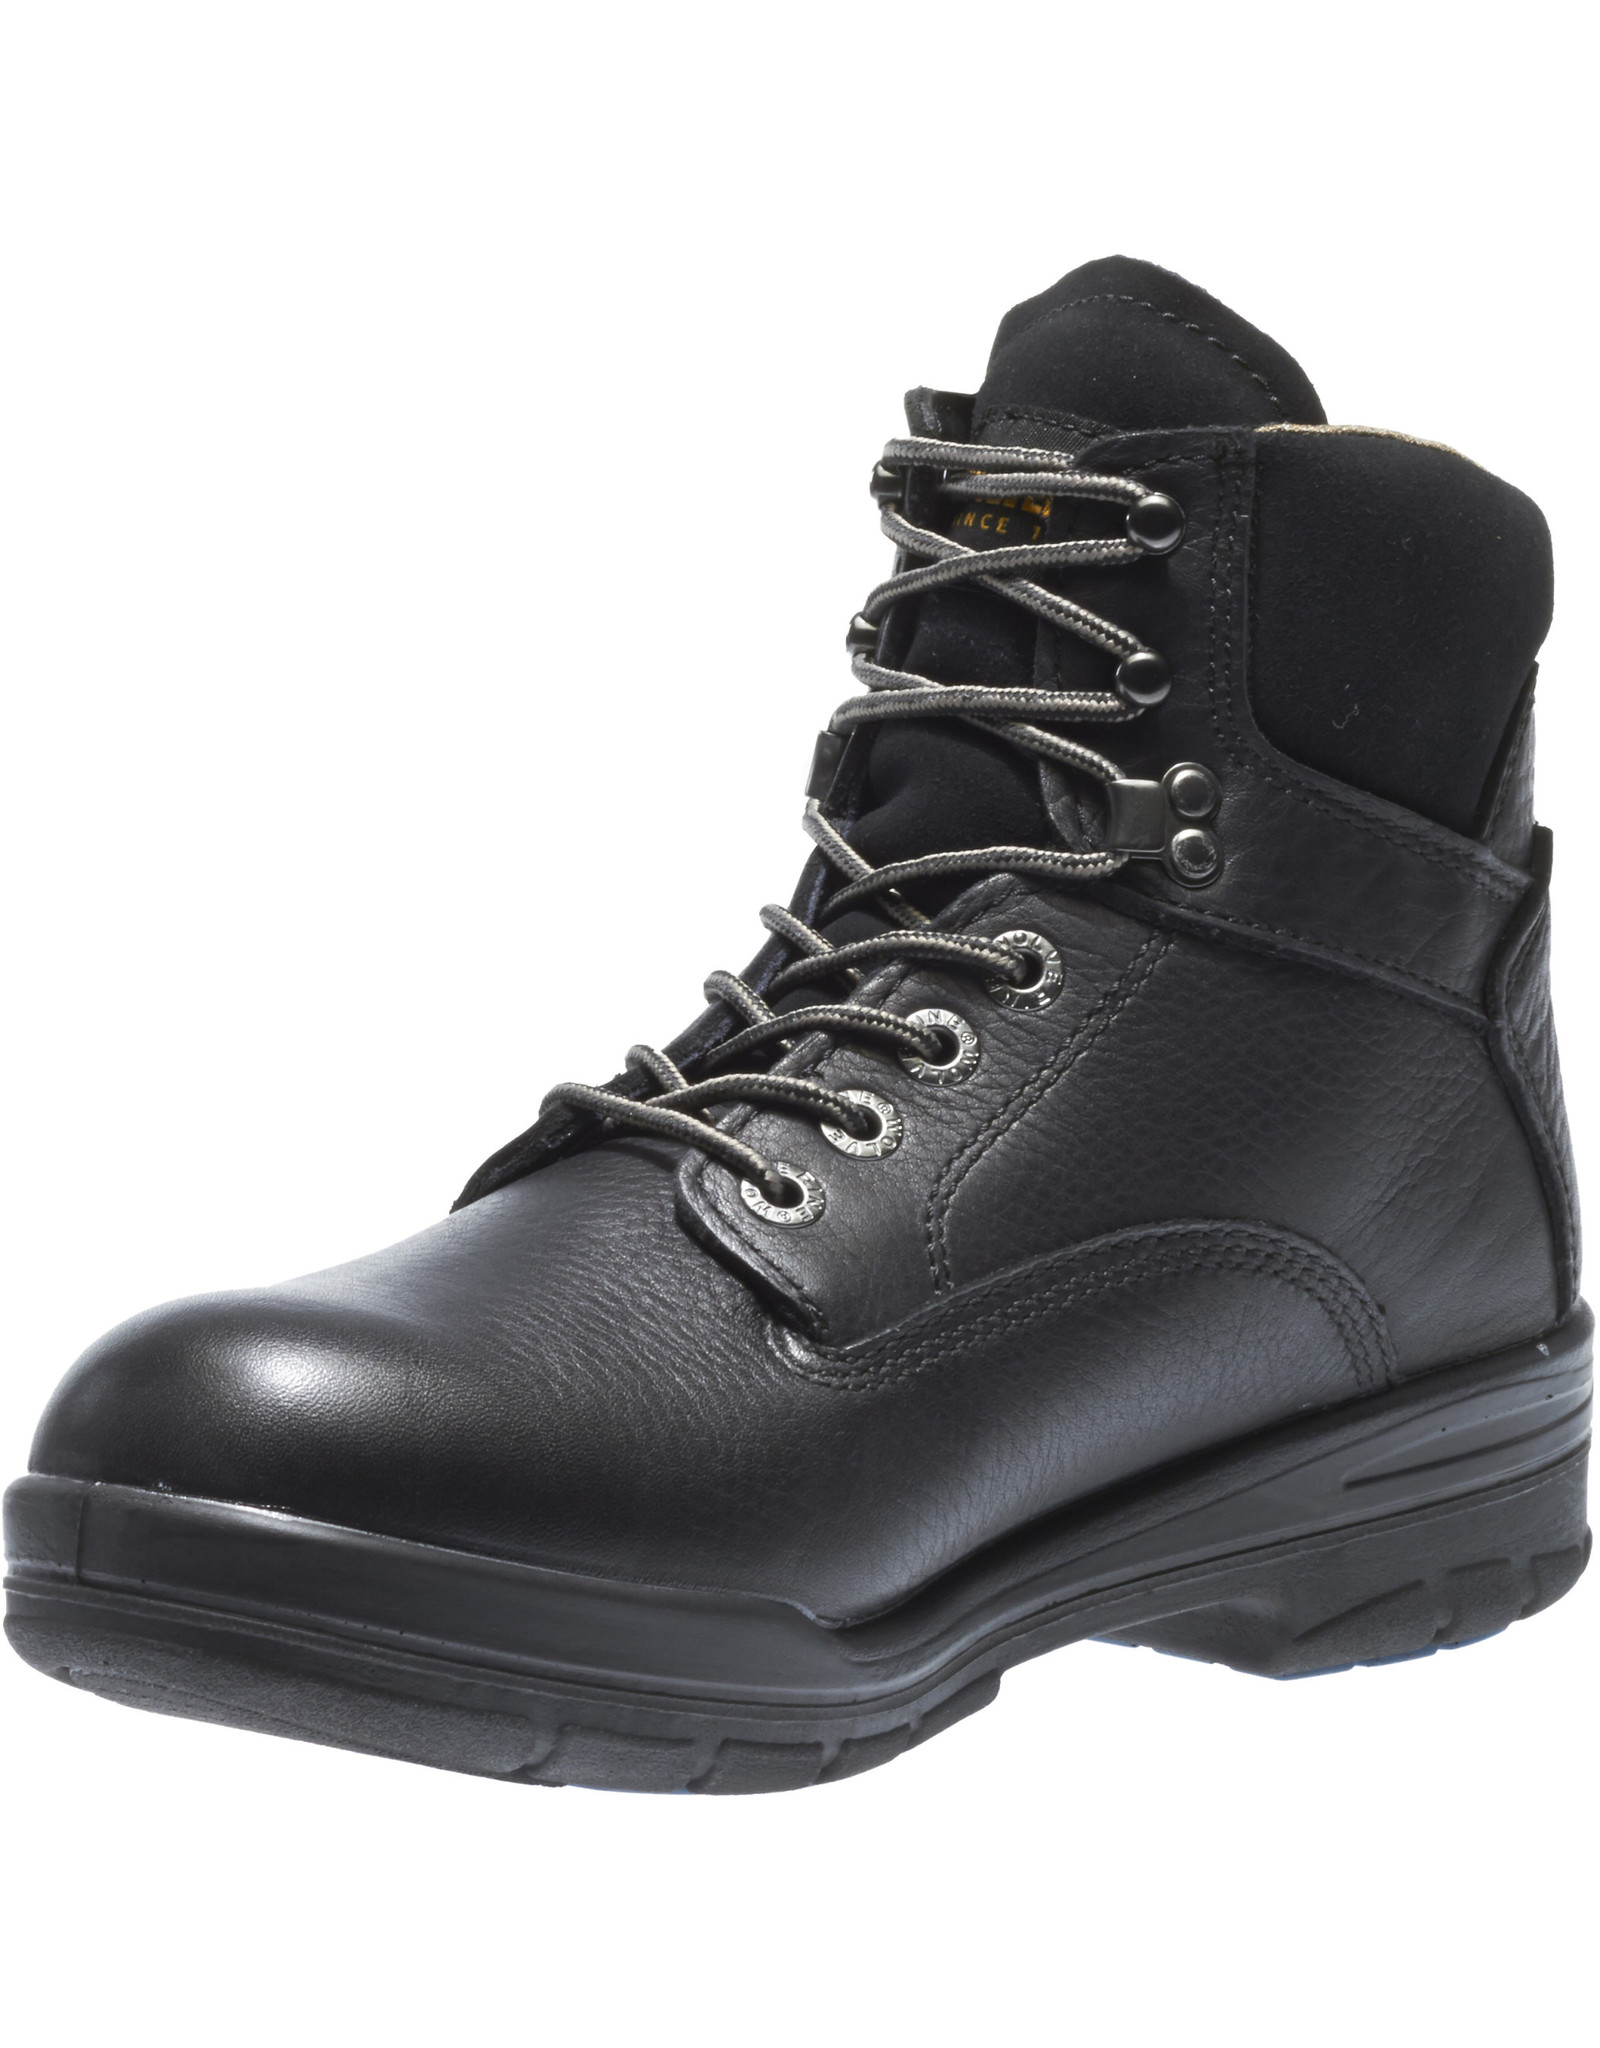 Wolverine Men's Durashock W03123 6” Soft Toe Work Boots Black